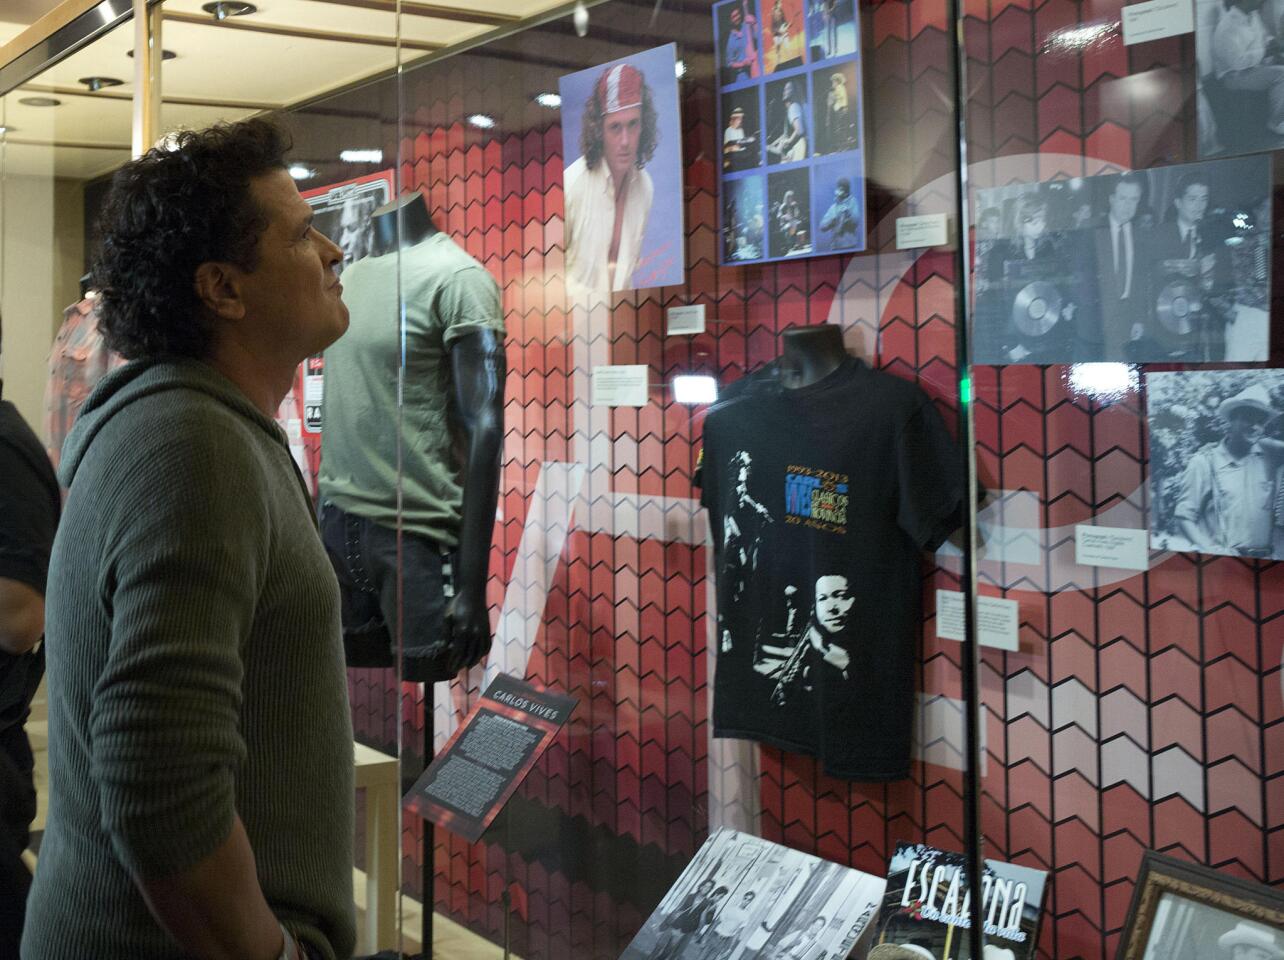 Museo de los Grammy acoge una exposición sobre la vida y obra de Carlos Vives